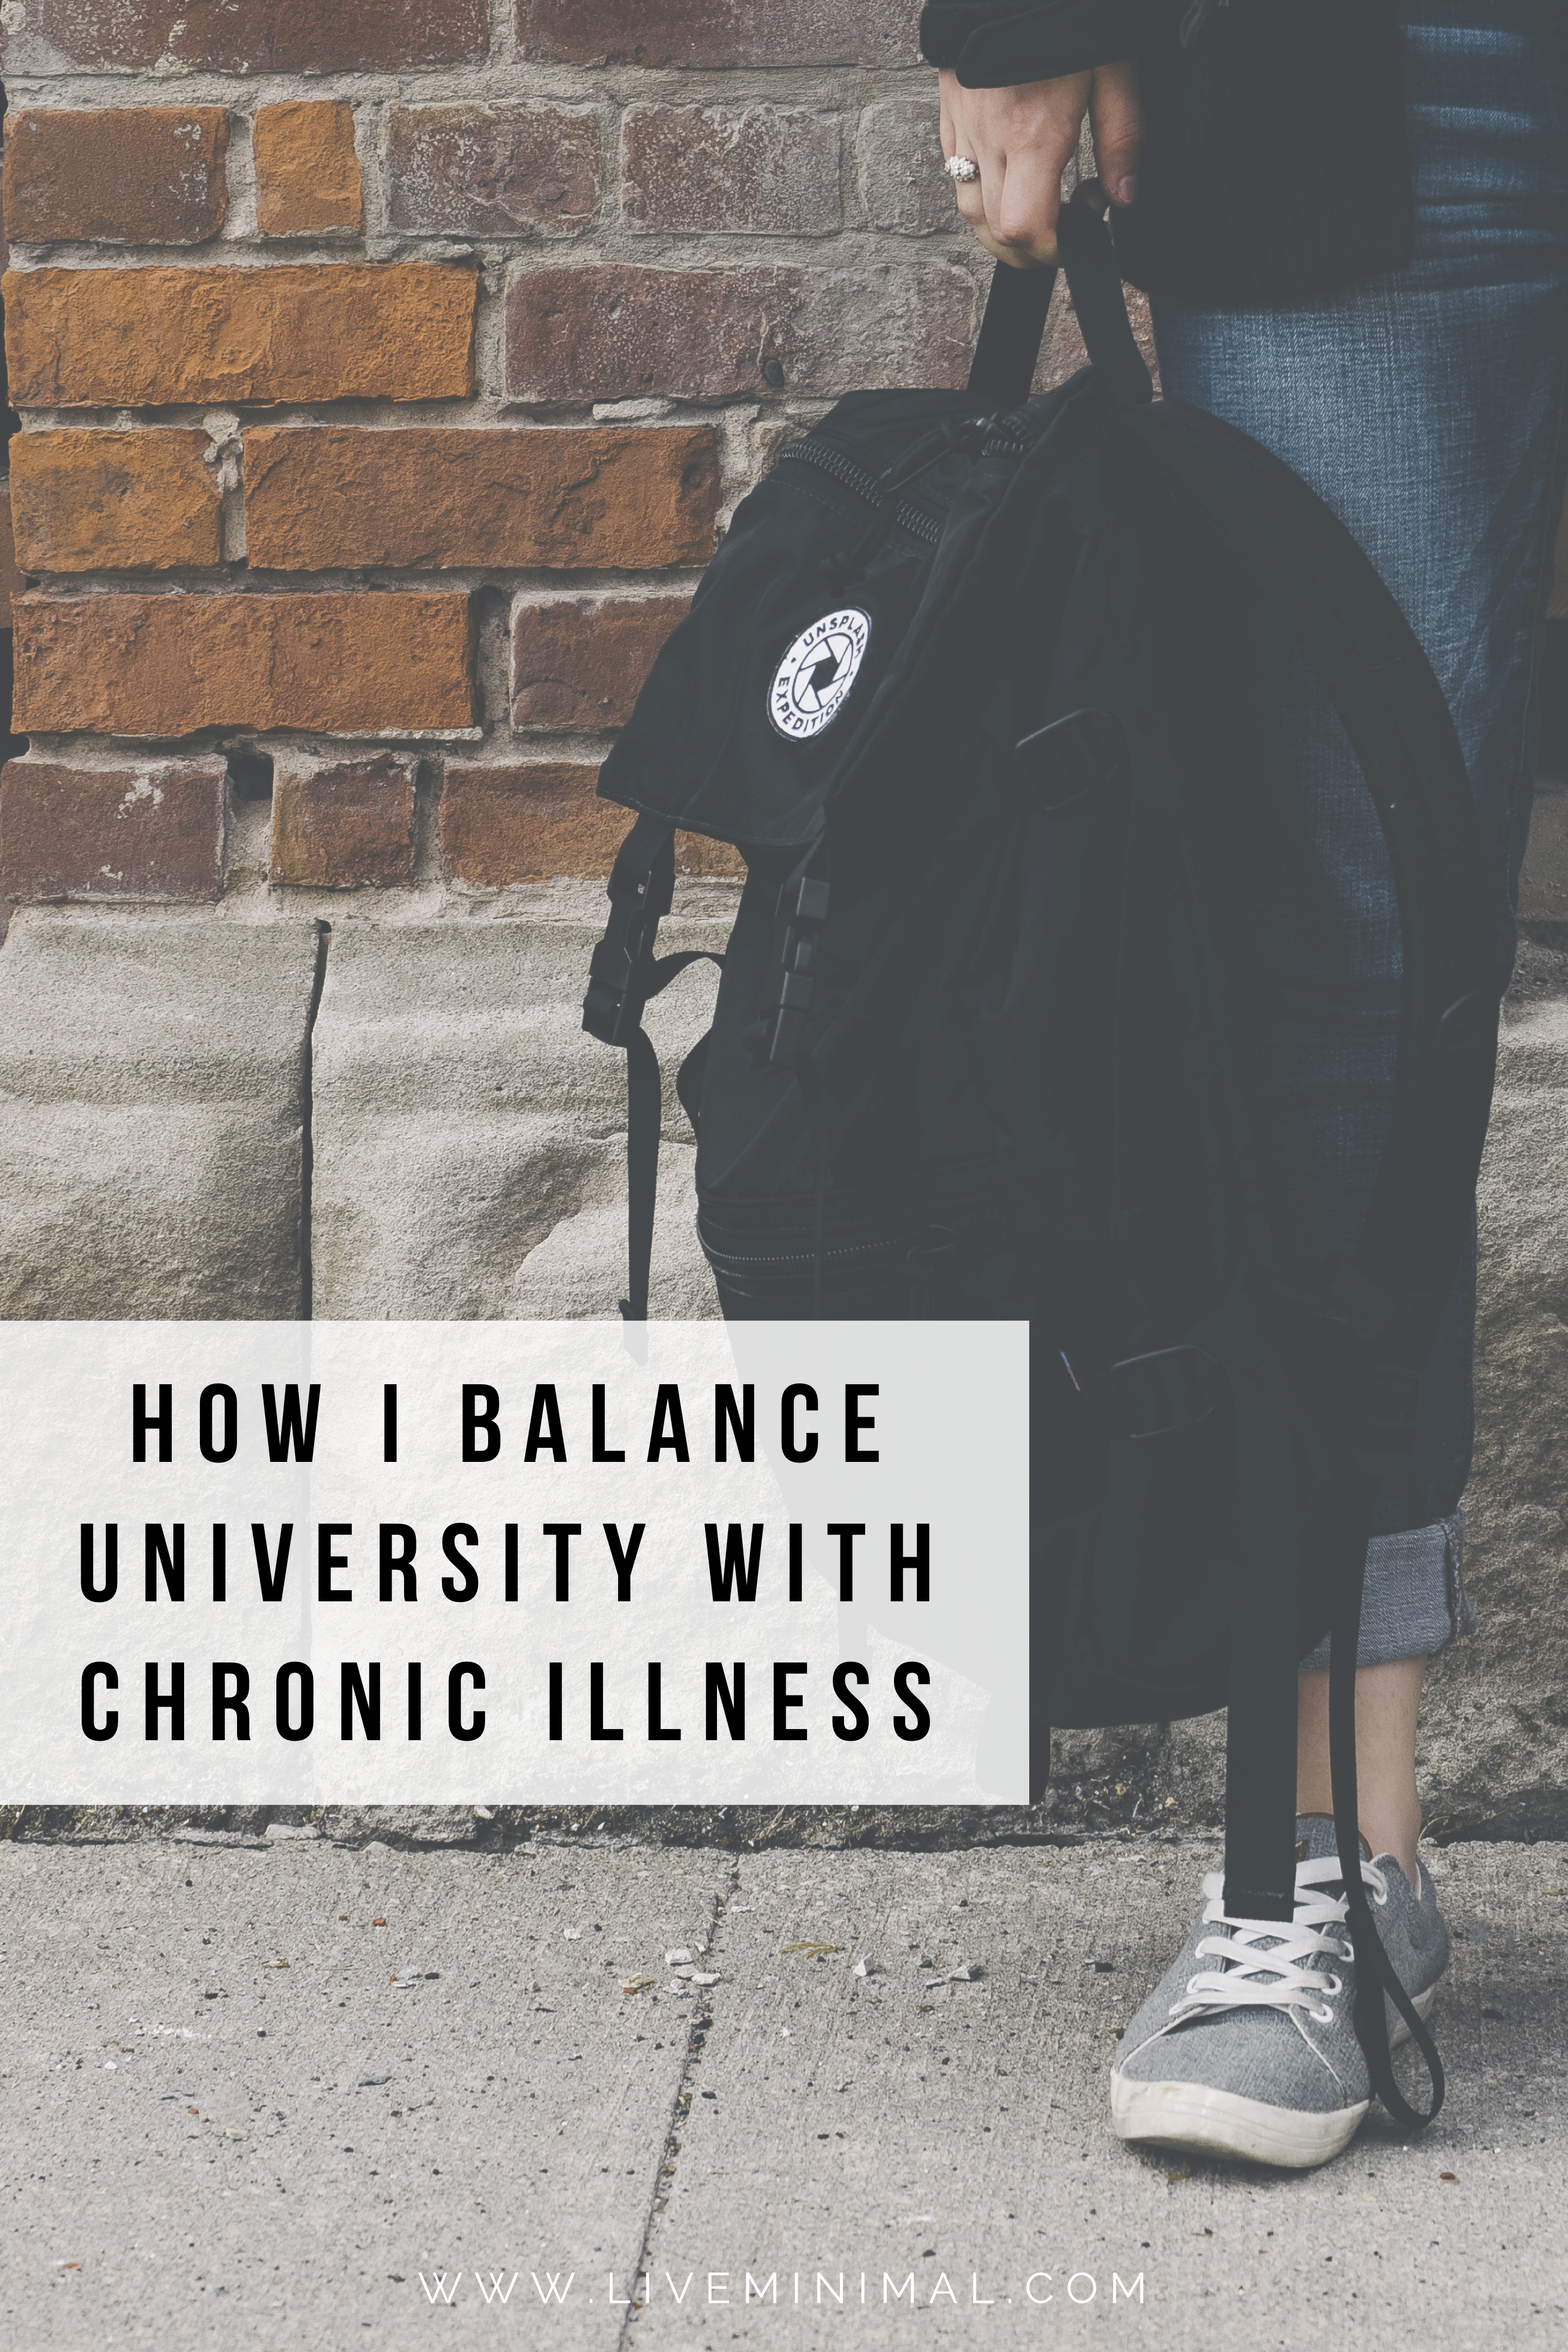 How I balance university with chronic illness